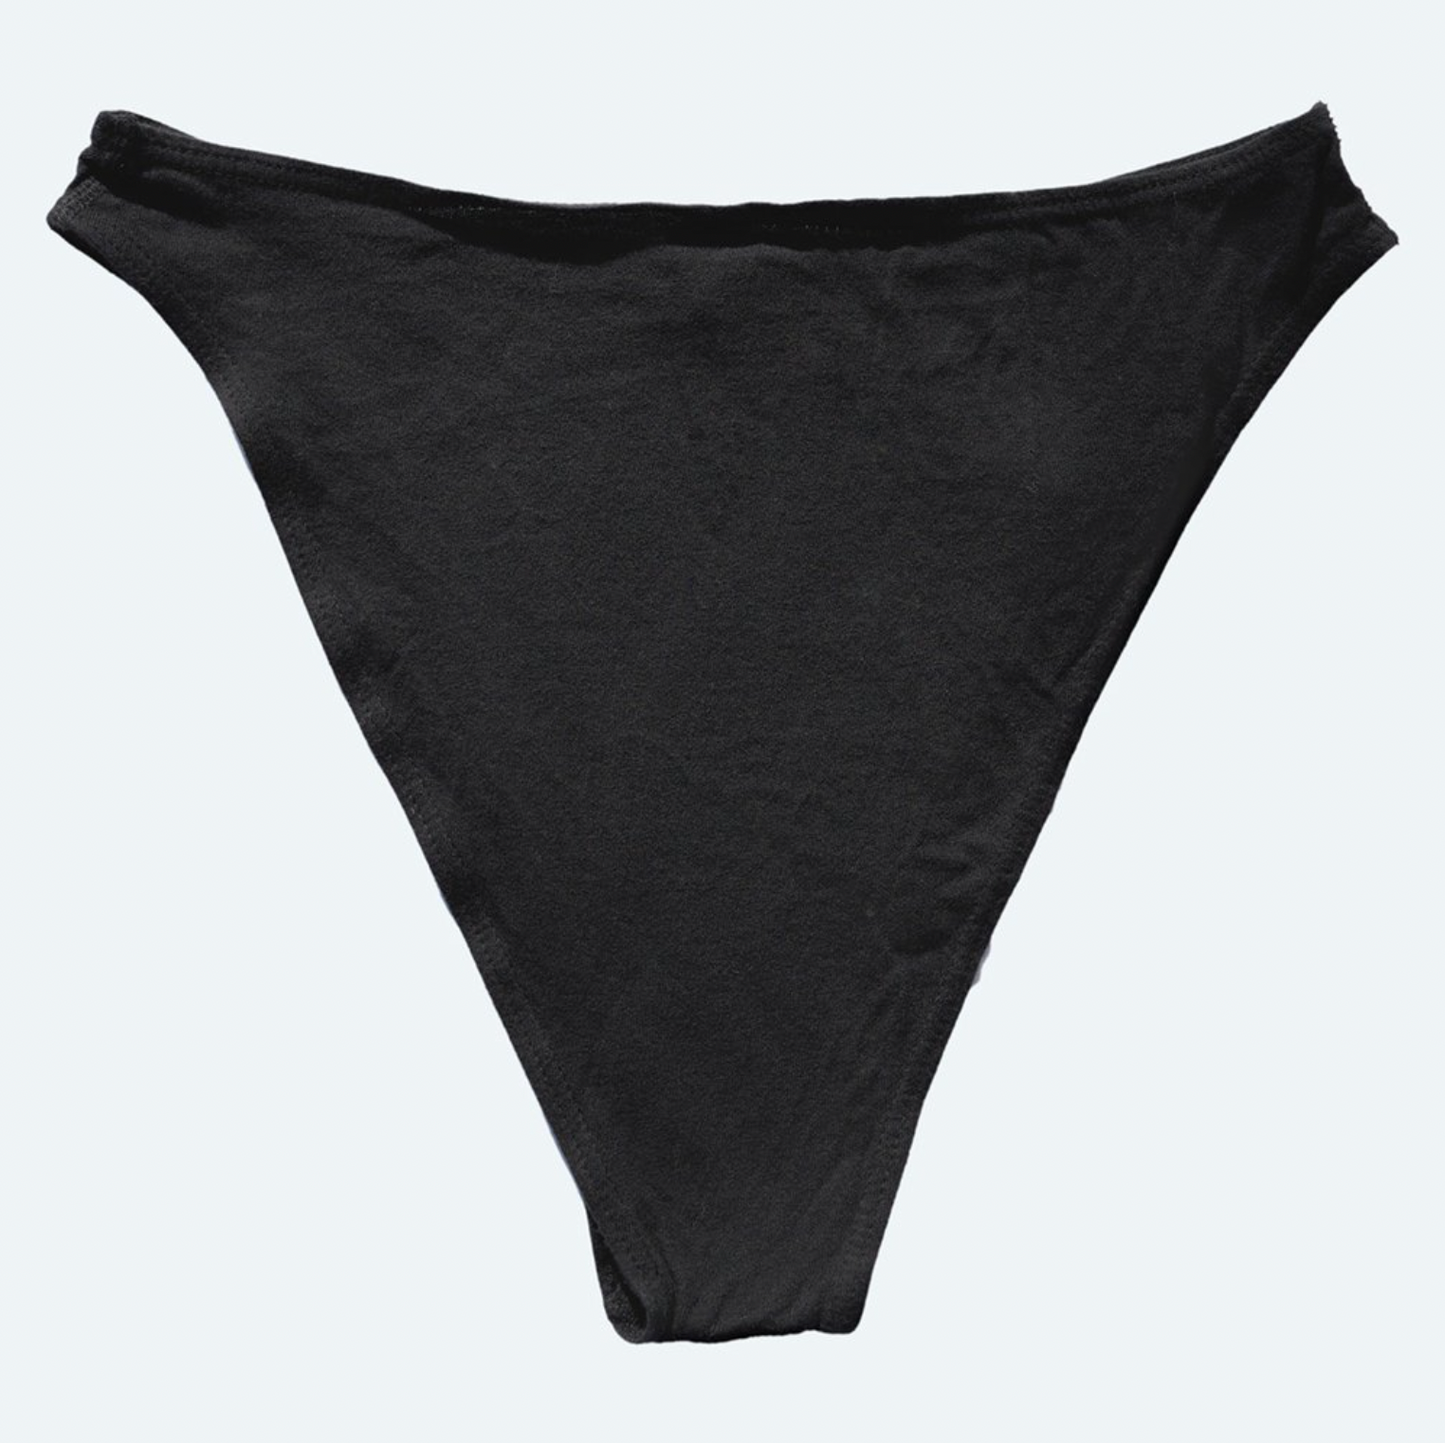 French Cut Underwear - Black